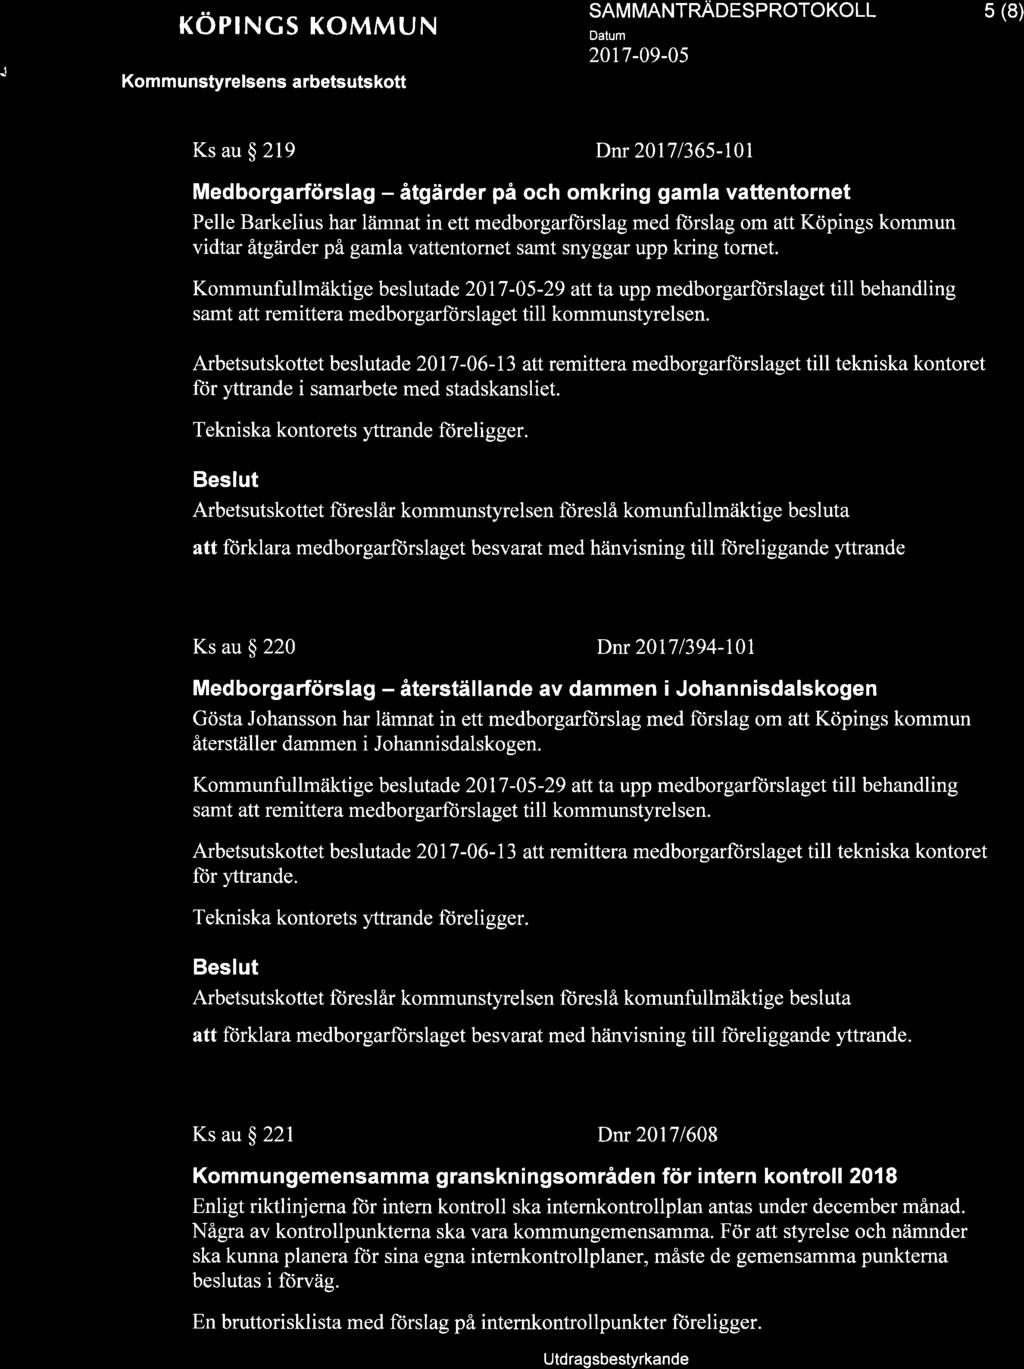 .j + röprncs KoMMUN SAM MANTRAOTSPROTOKOLL 2017-09-05 5 (8) Ks au $ 219 Dnr 20171365-101 Medborgarförslag - åtgärder på och omkring gamla vattentornet Pelle Barkelius har lämnat in ett